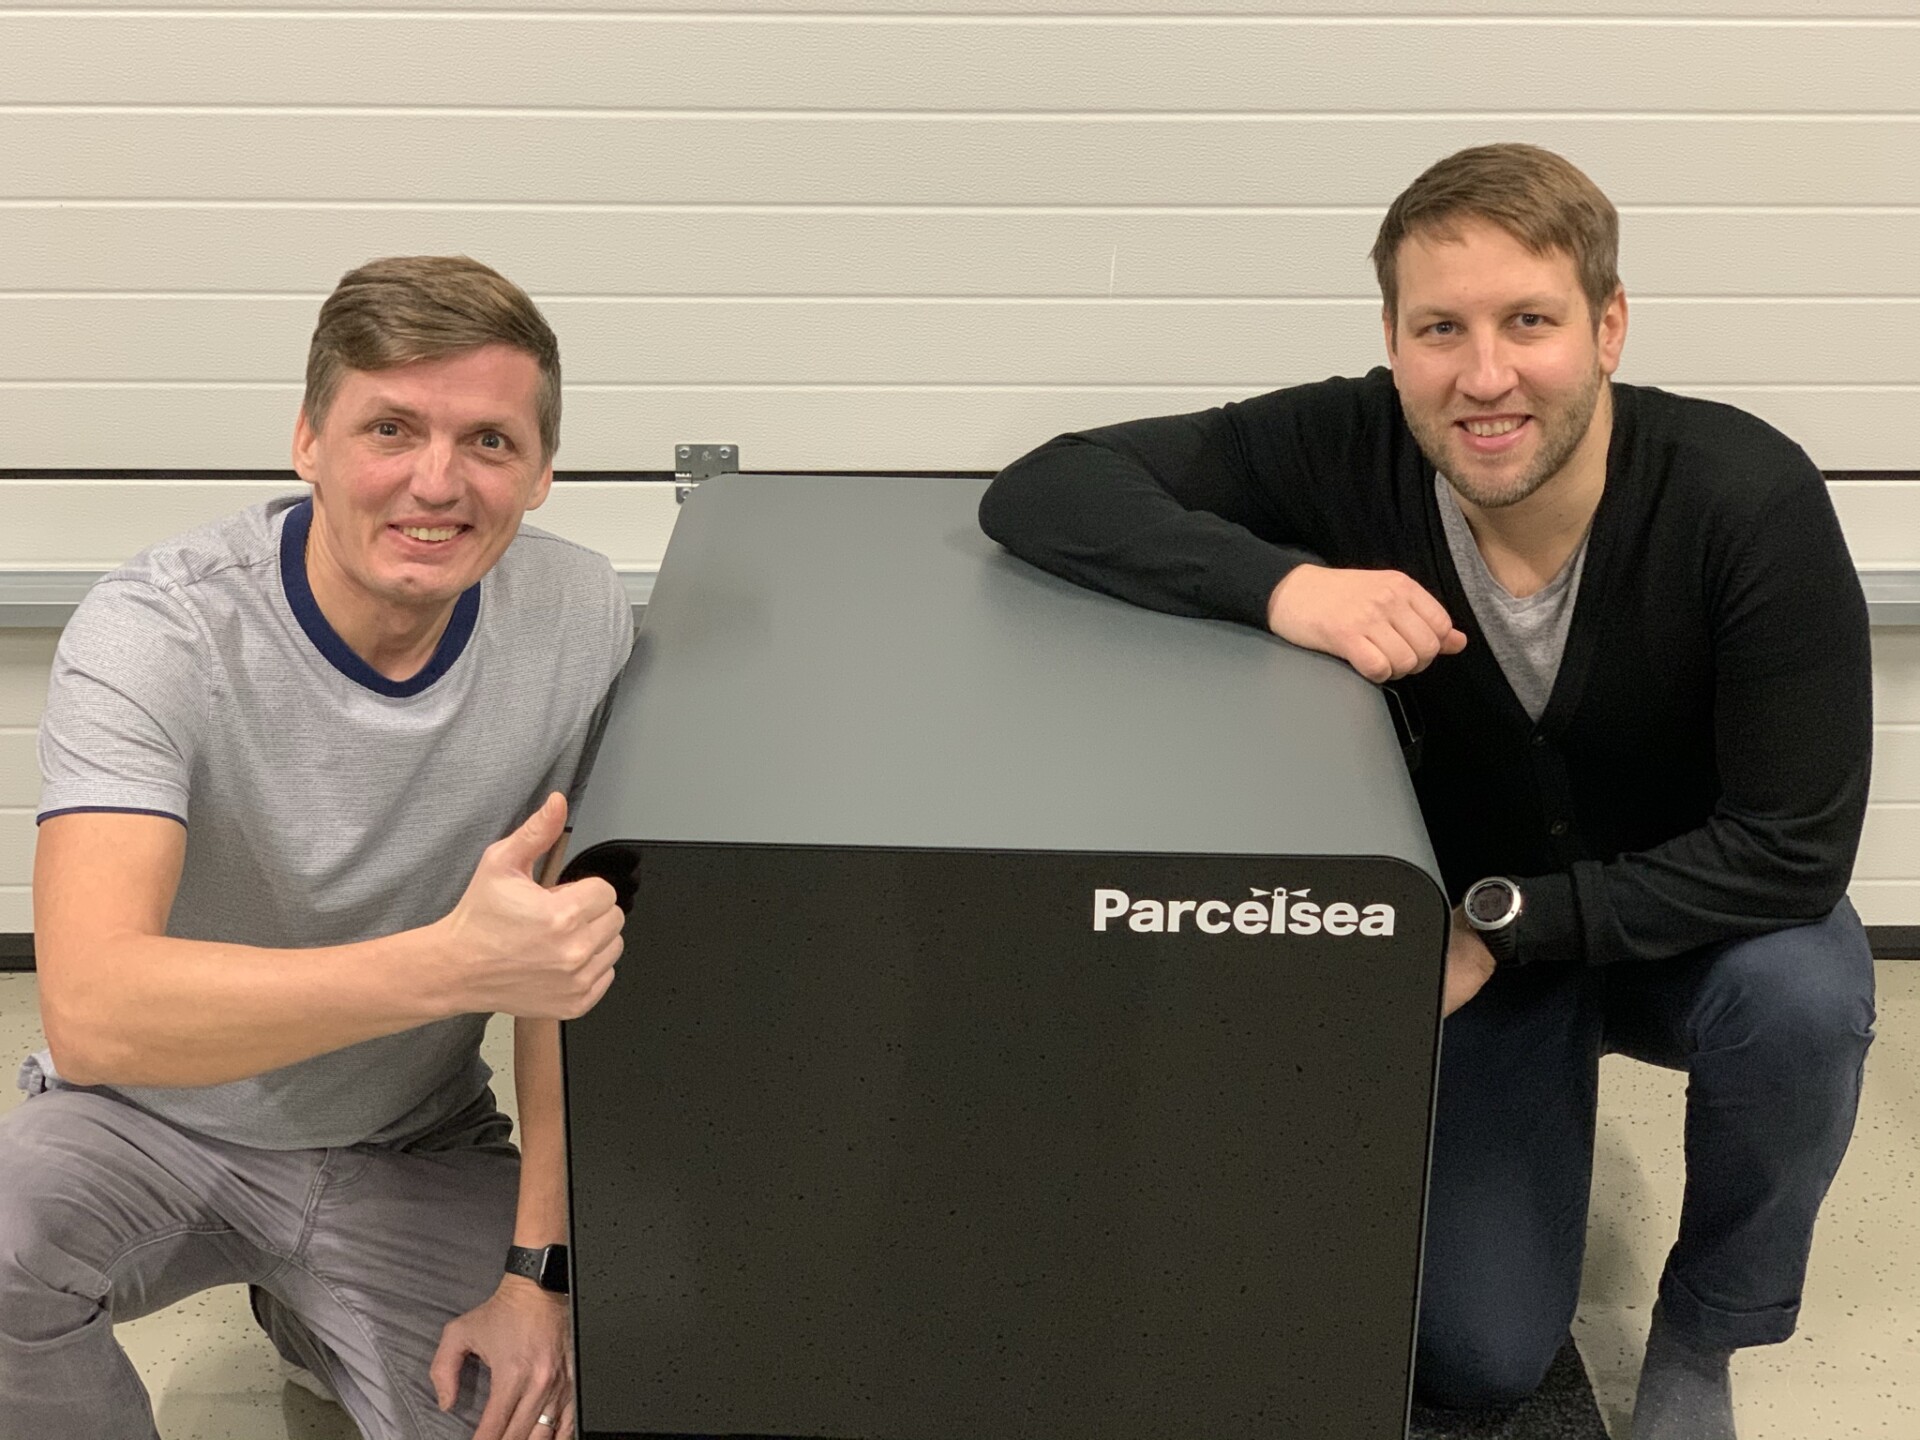 Parcelsea co-founders Indrek Jürgenson and Andres Sampka